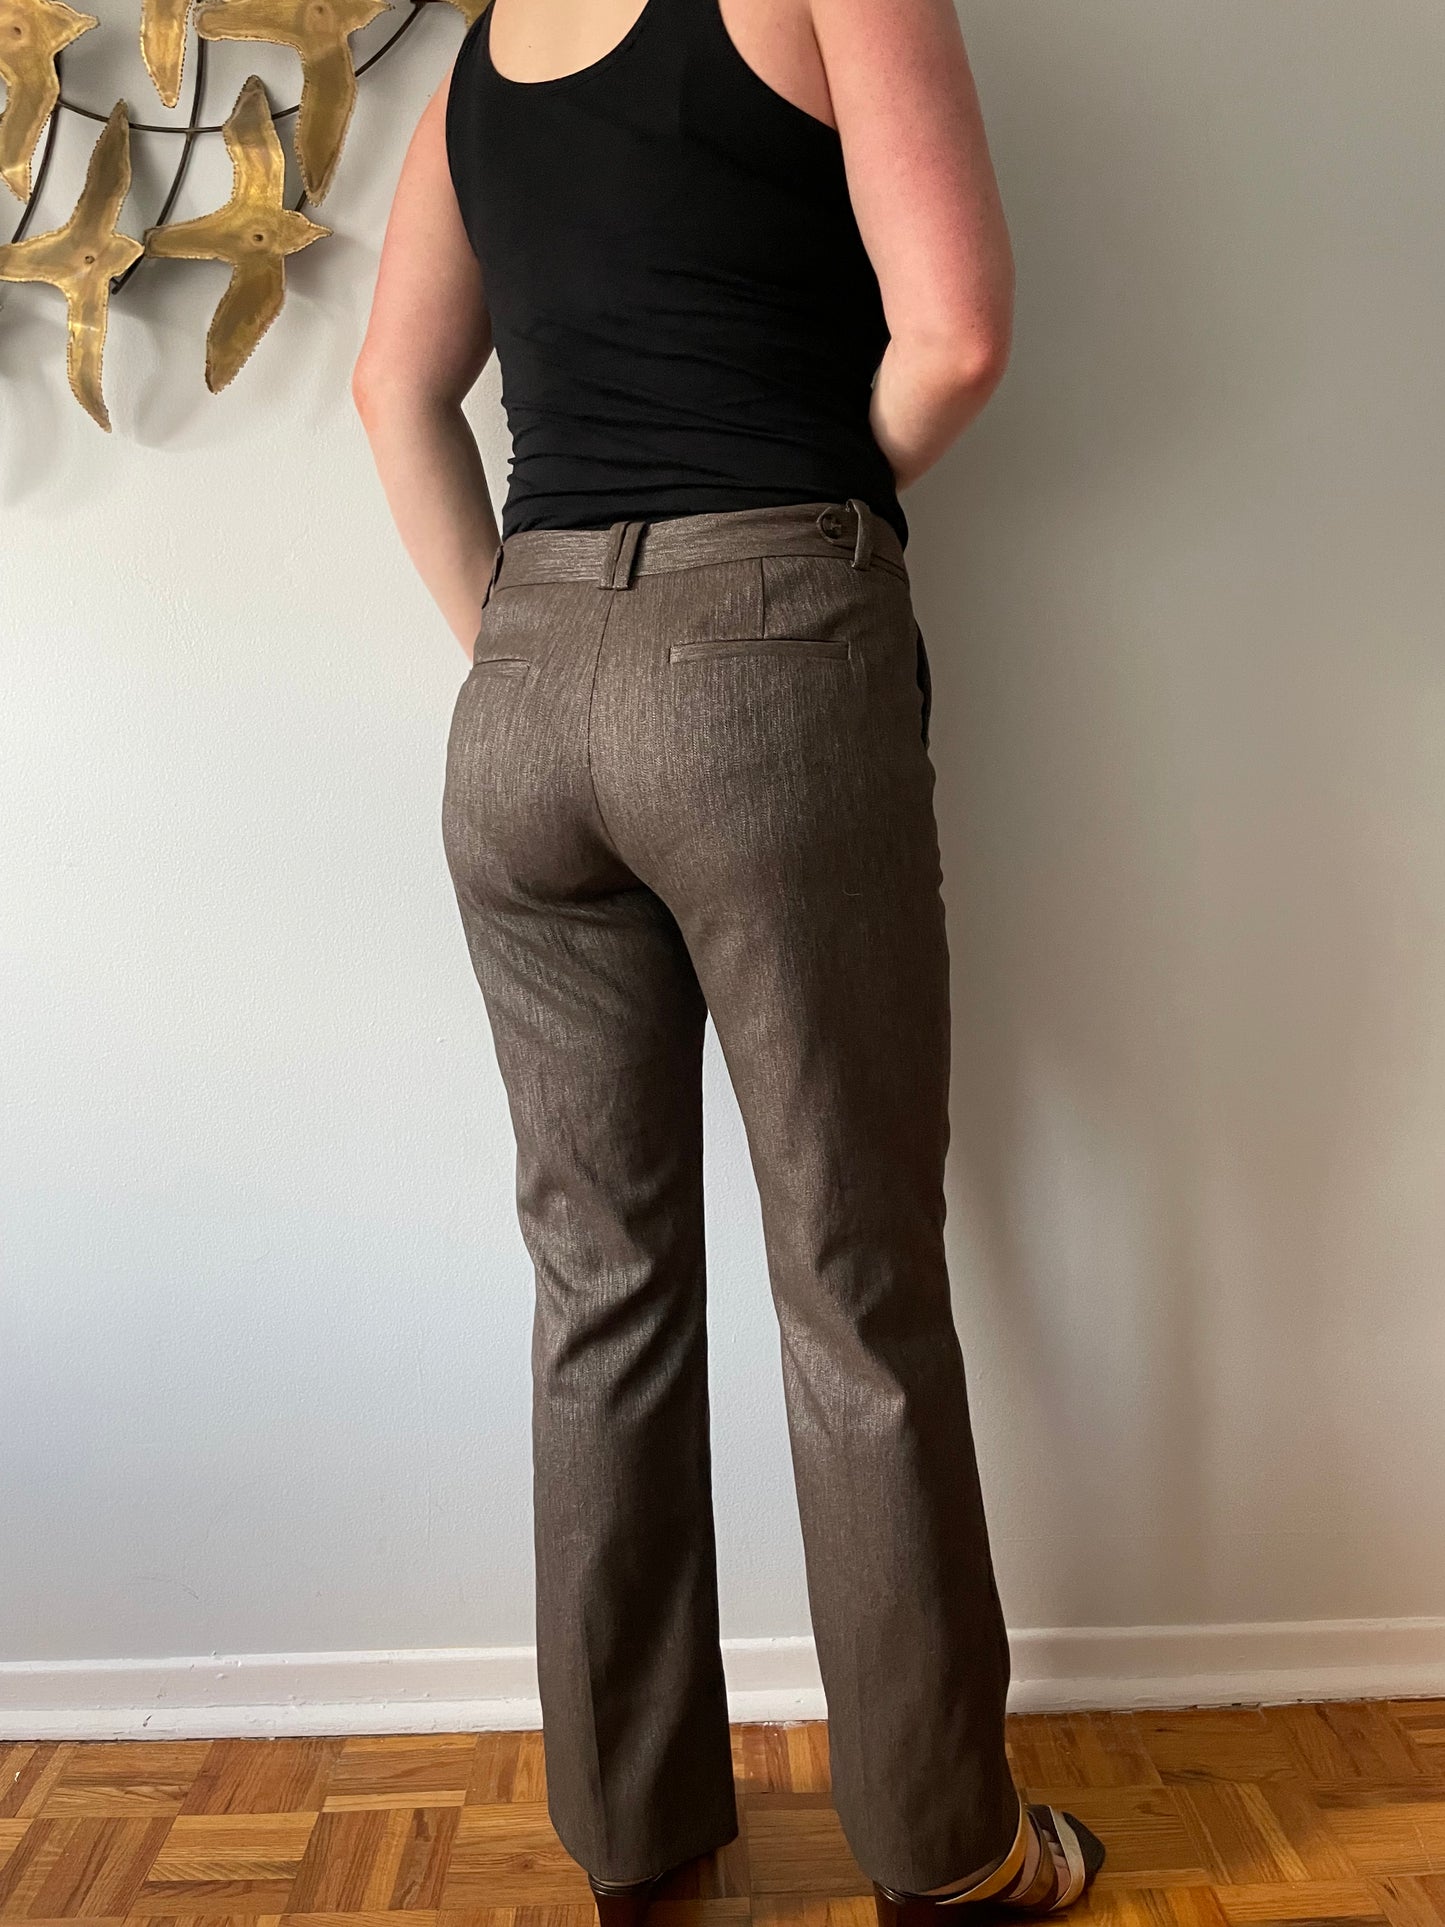 MEXX Brown Shiny Wide Leg Trouser Pants - Size 36 (Small)